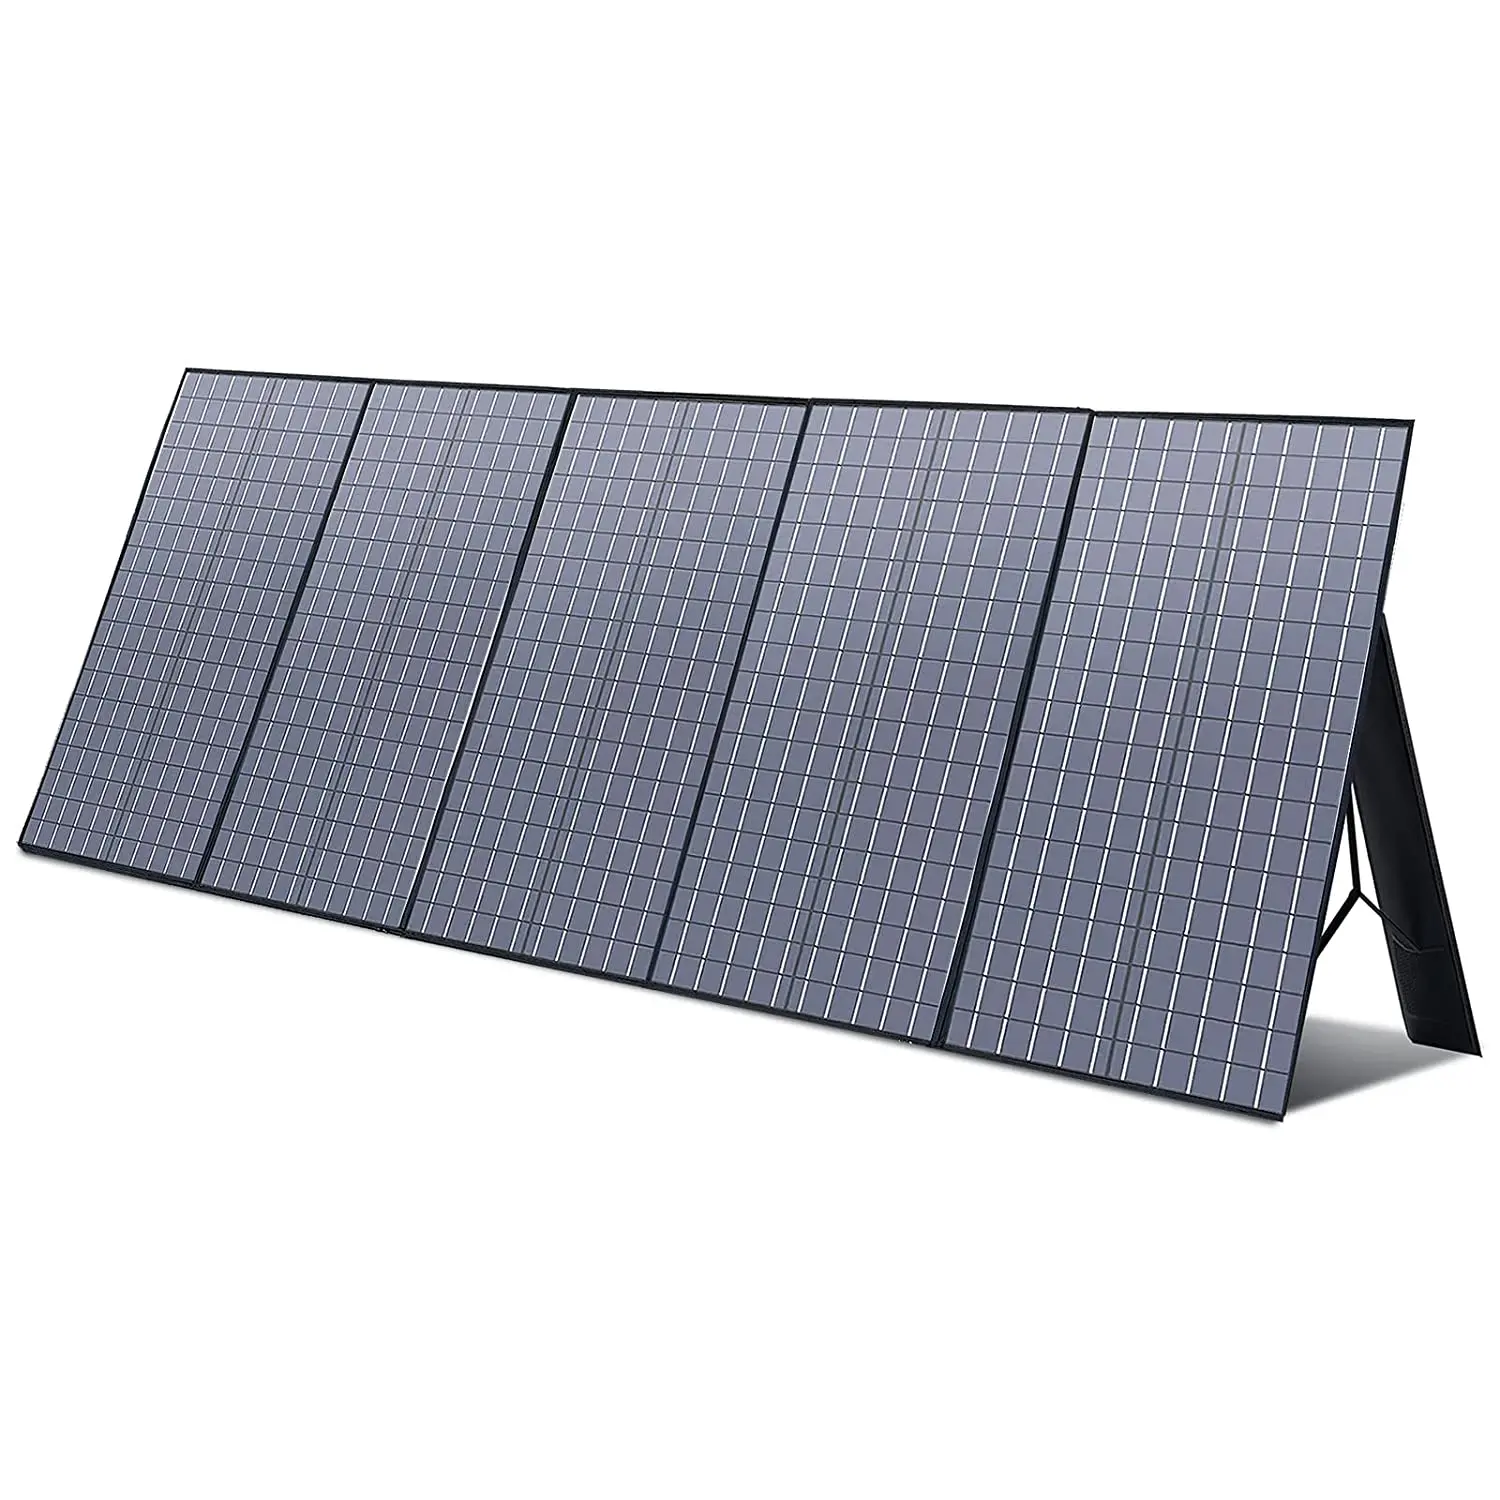 ALLPOWERS Foldable Solar Panel 400W / 200W / 140W / 100W / 6